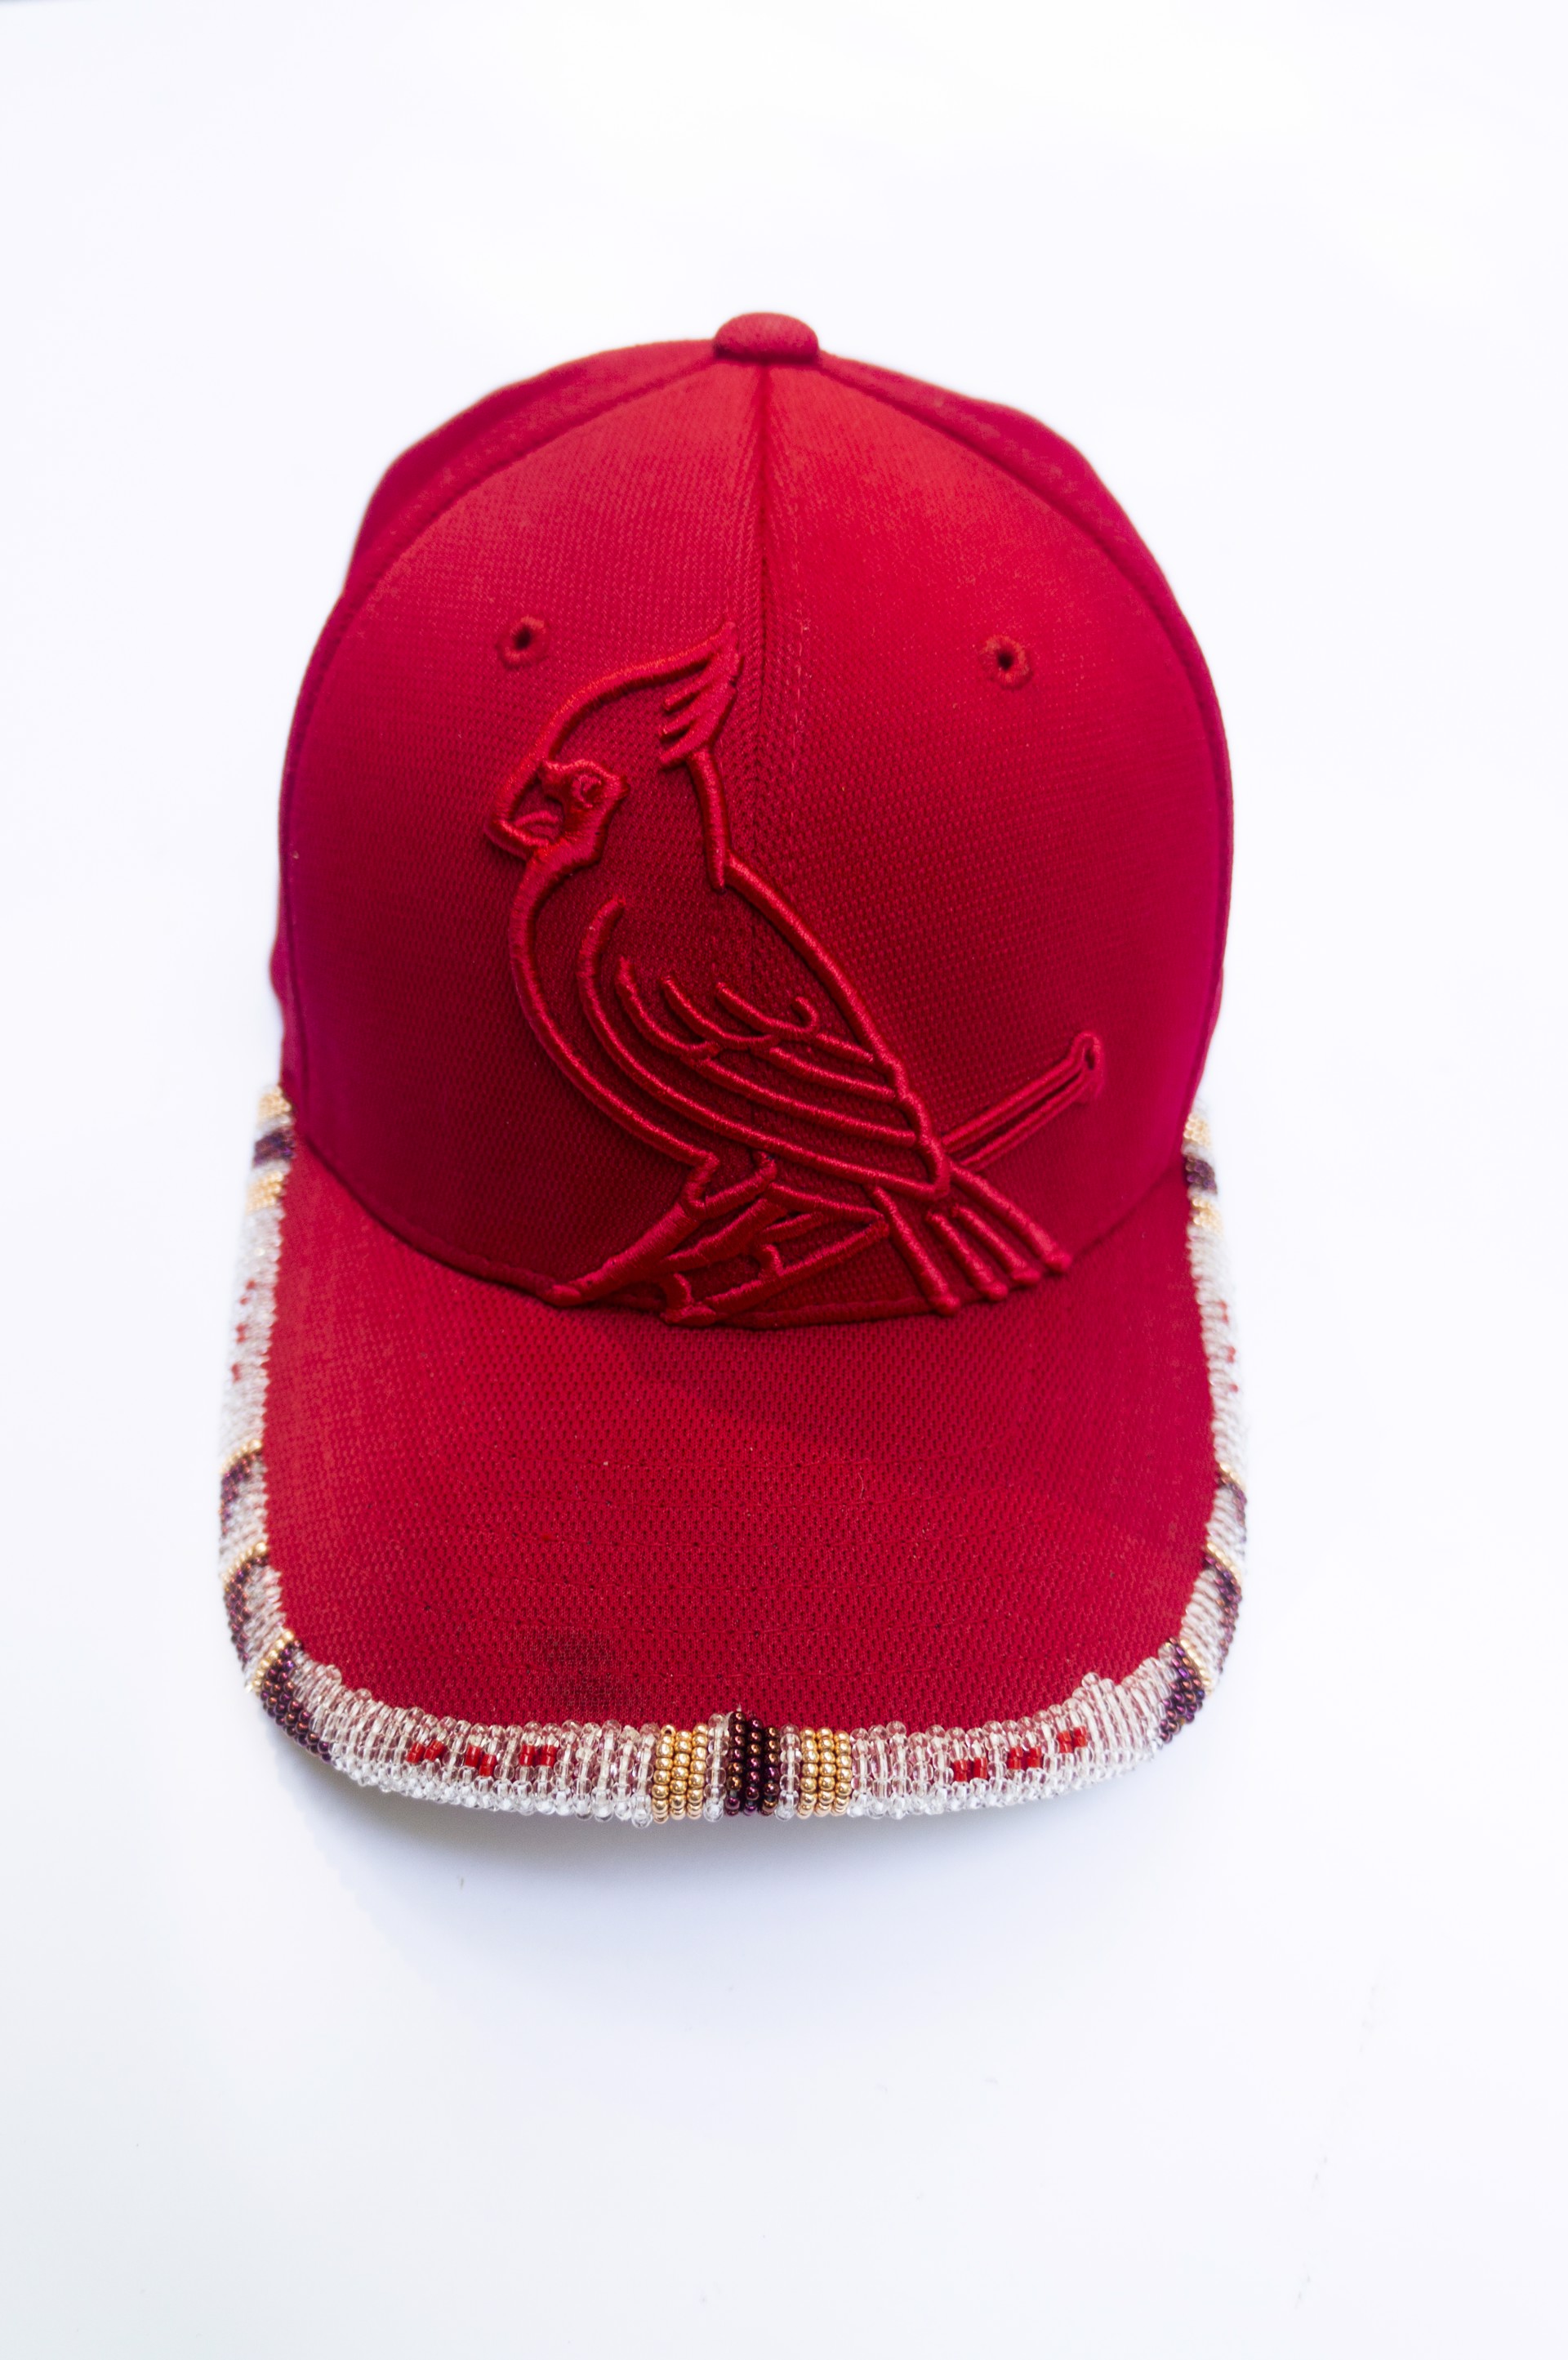 Cardinals Beaded Cap by Hattie Lee